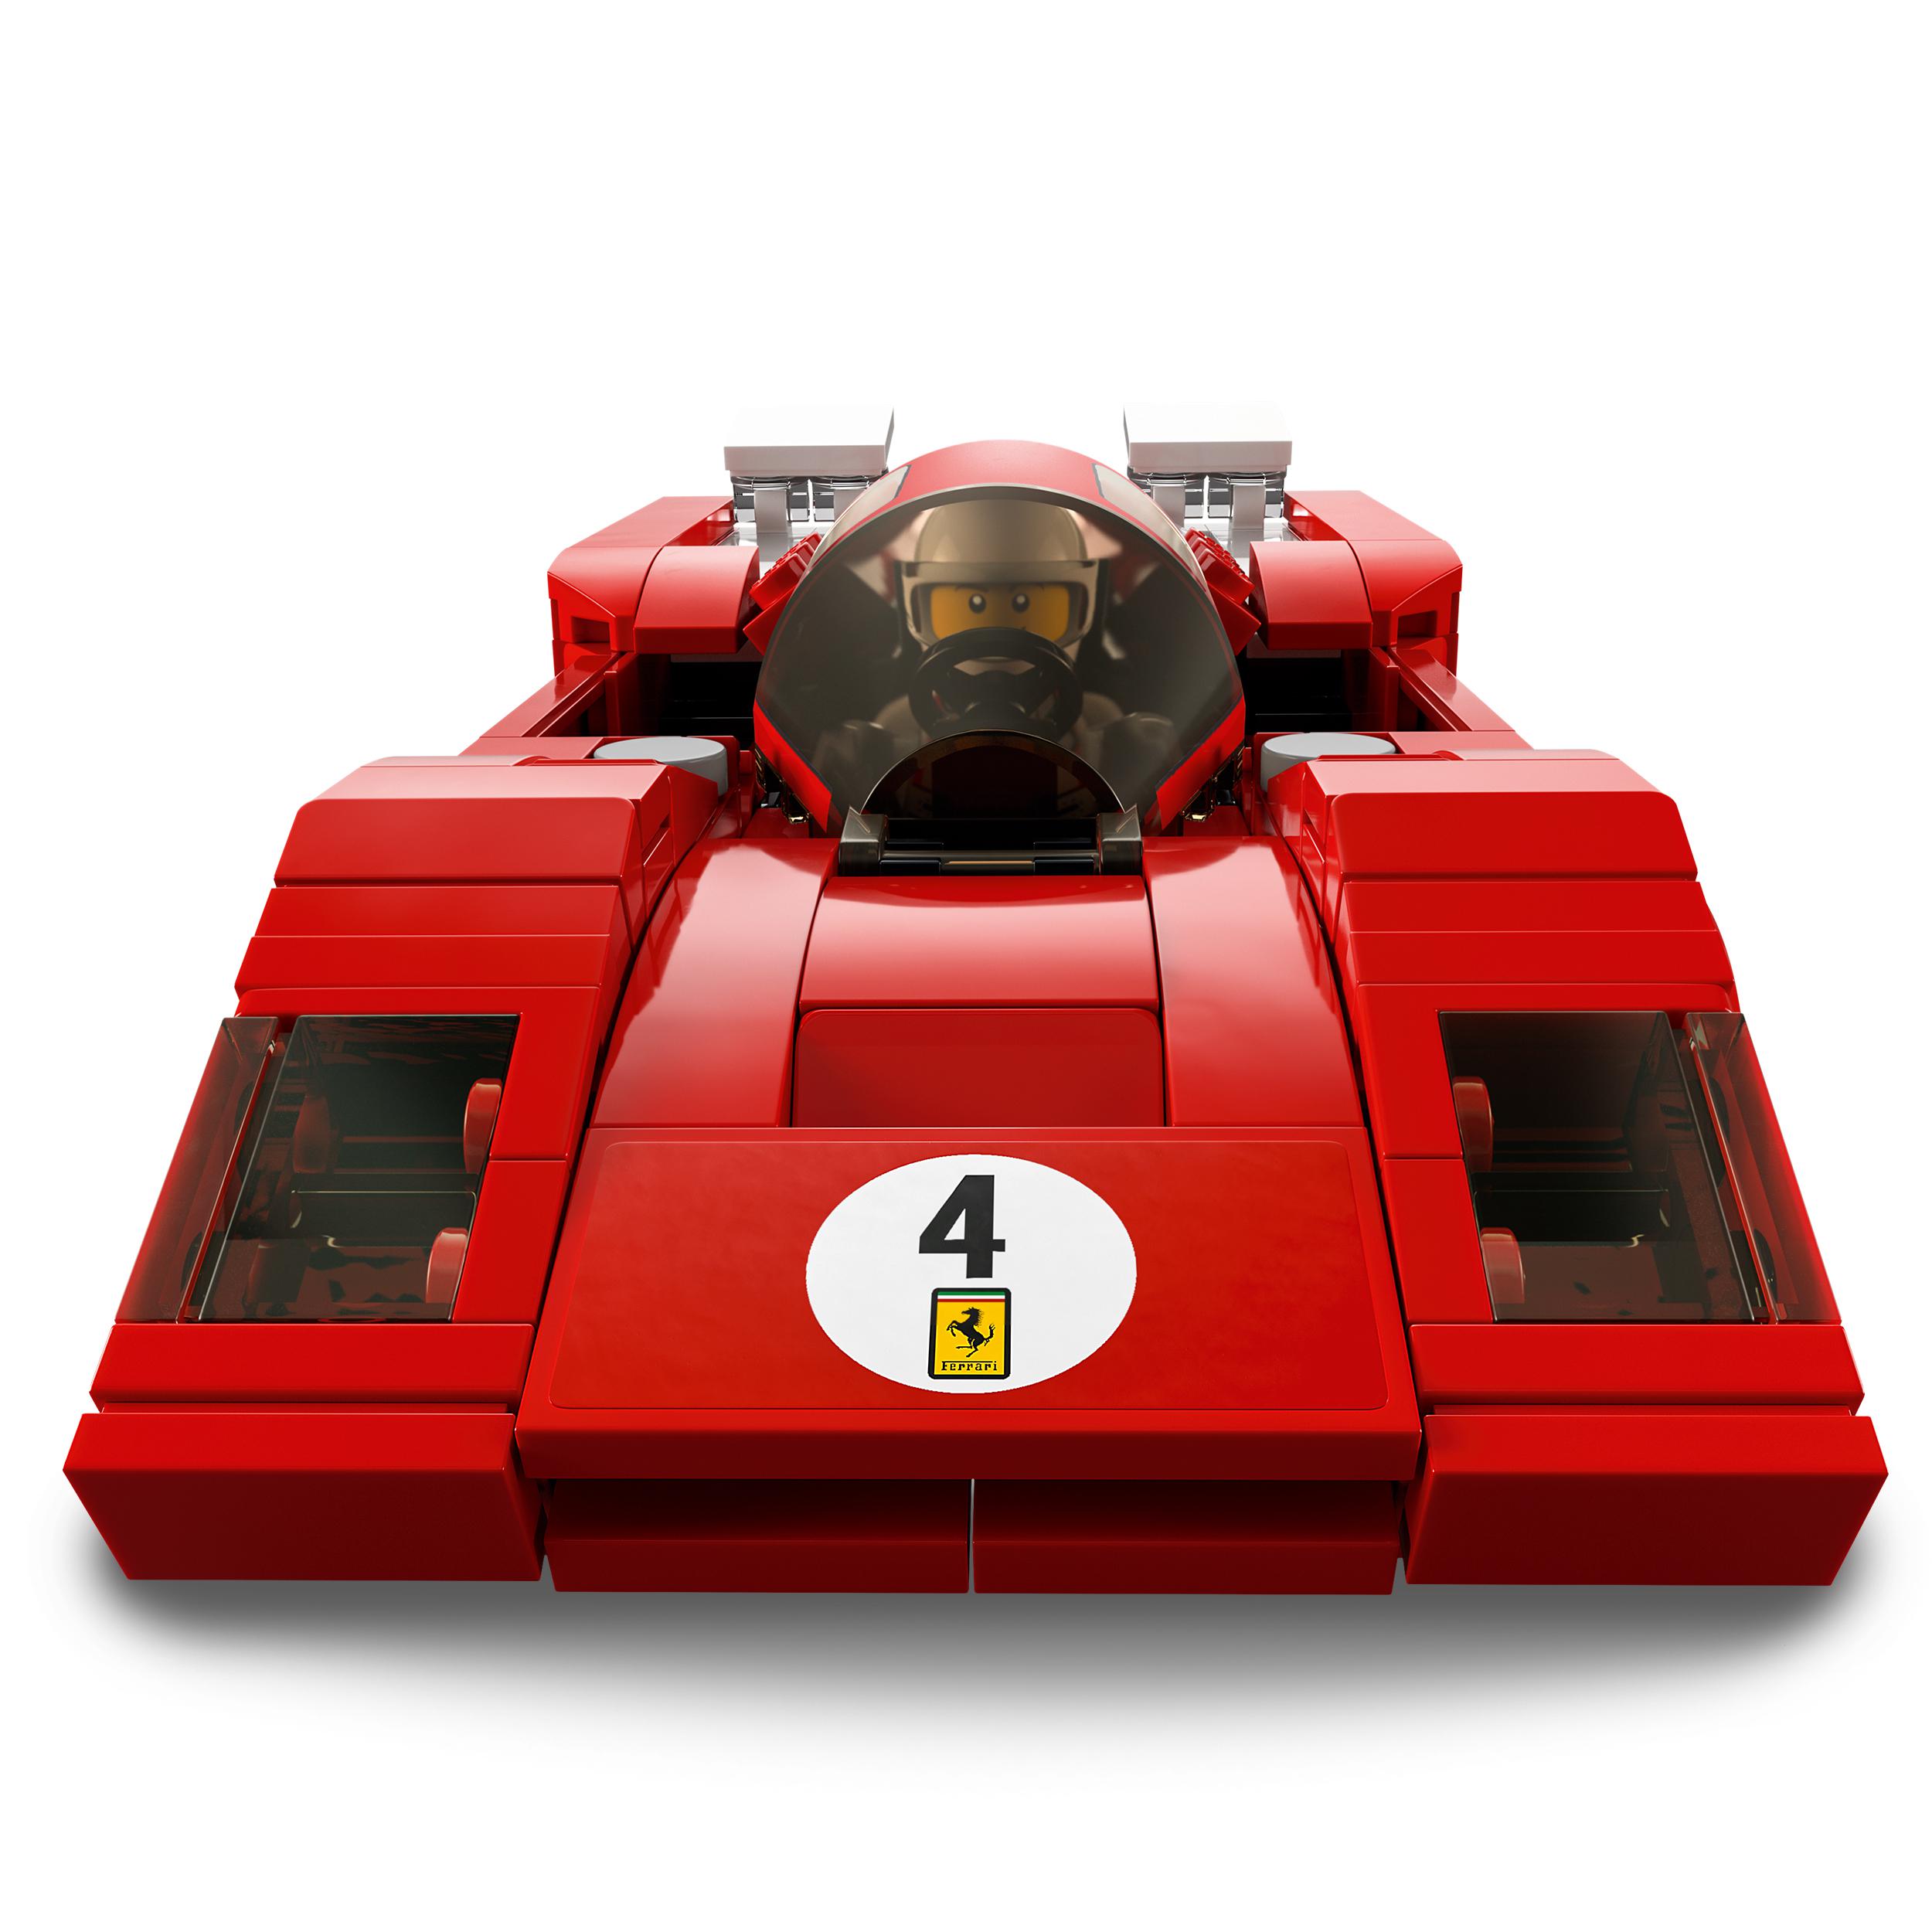 Lego speed champions 76906 1970 ferrari 512 m, macchina giocattolo da corsa, auto sportiva rossa, modellismo da collezione - LEGO SPEED CHAMPIONS, Lego